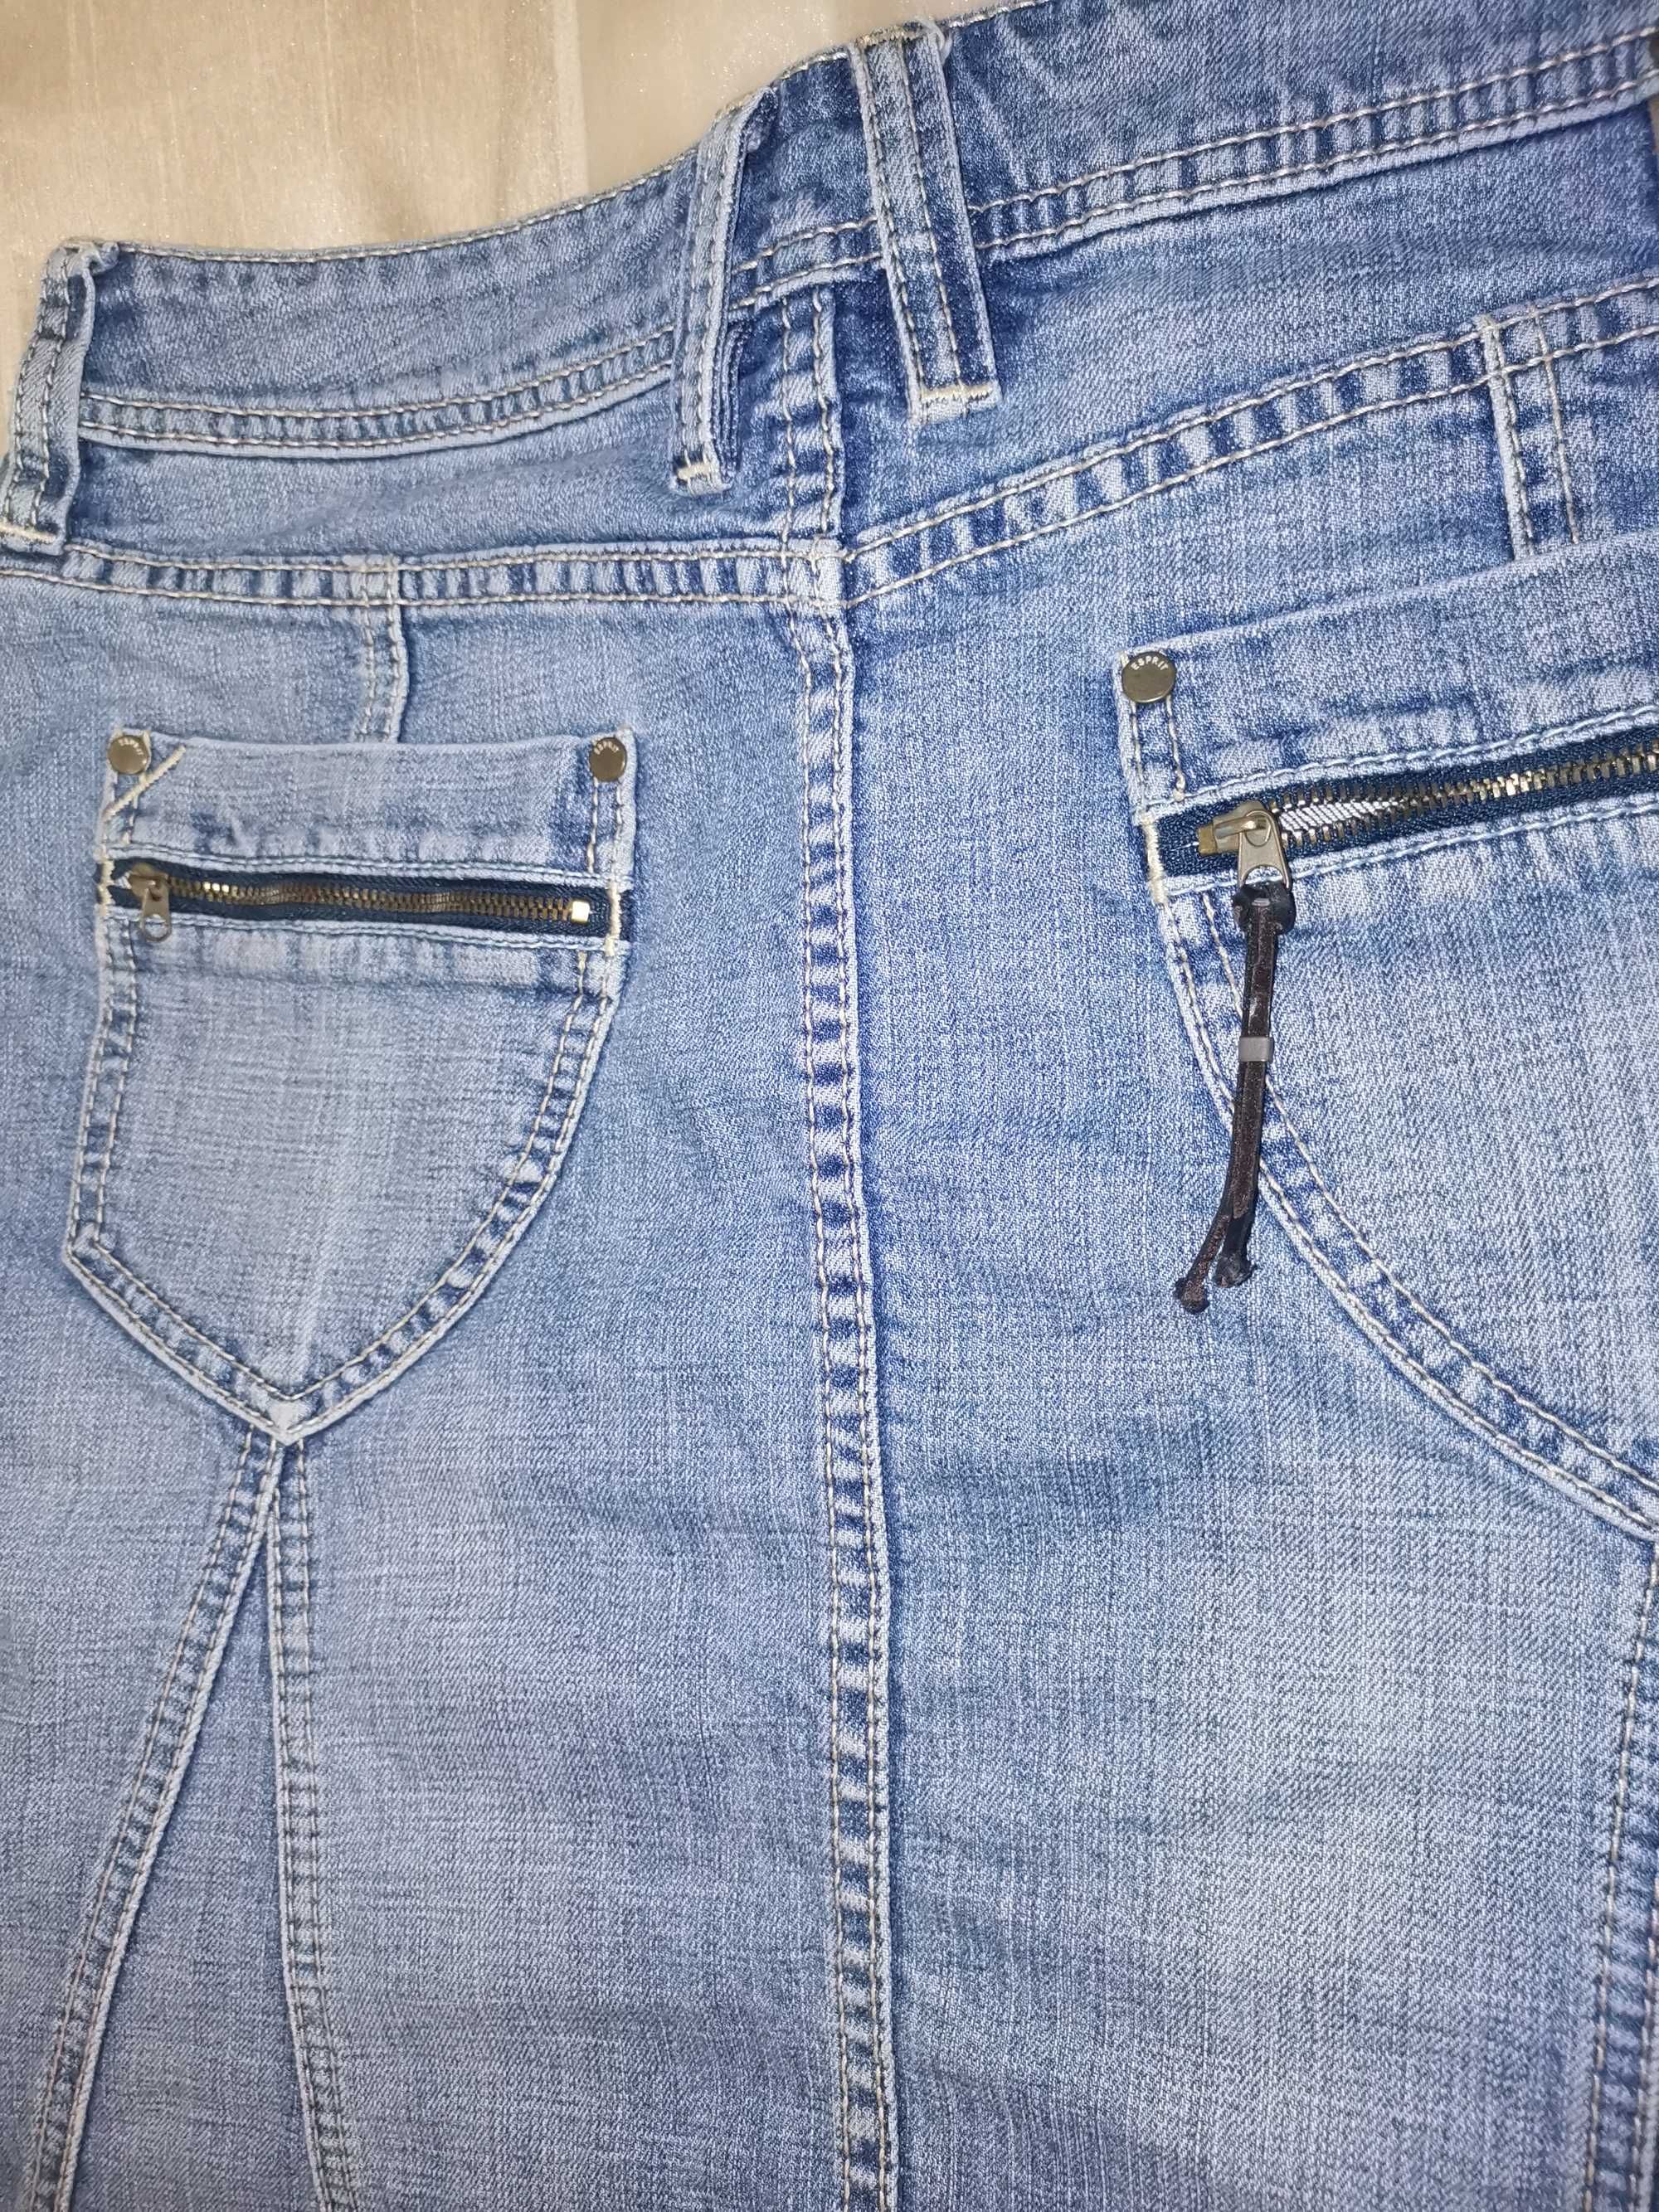 Spódnica dżinsowa/jeansowa ESPRIT